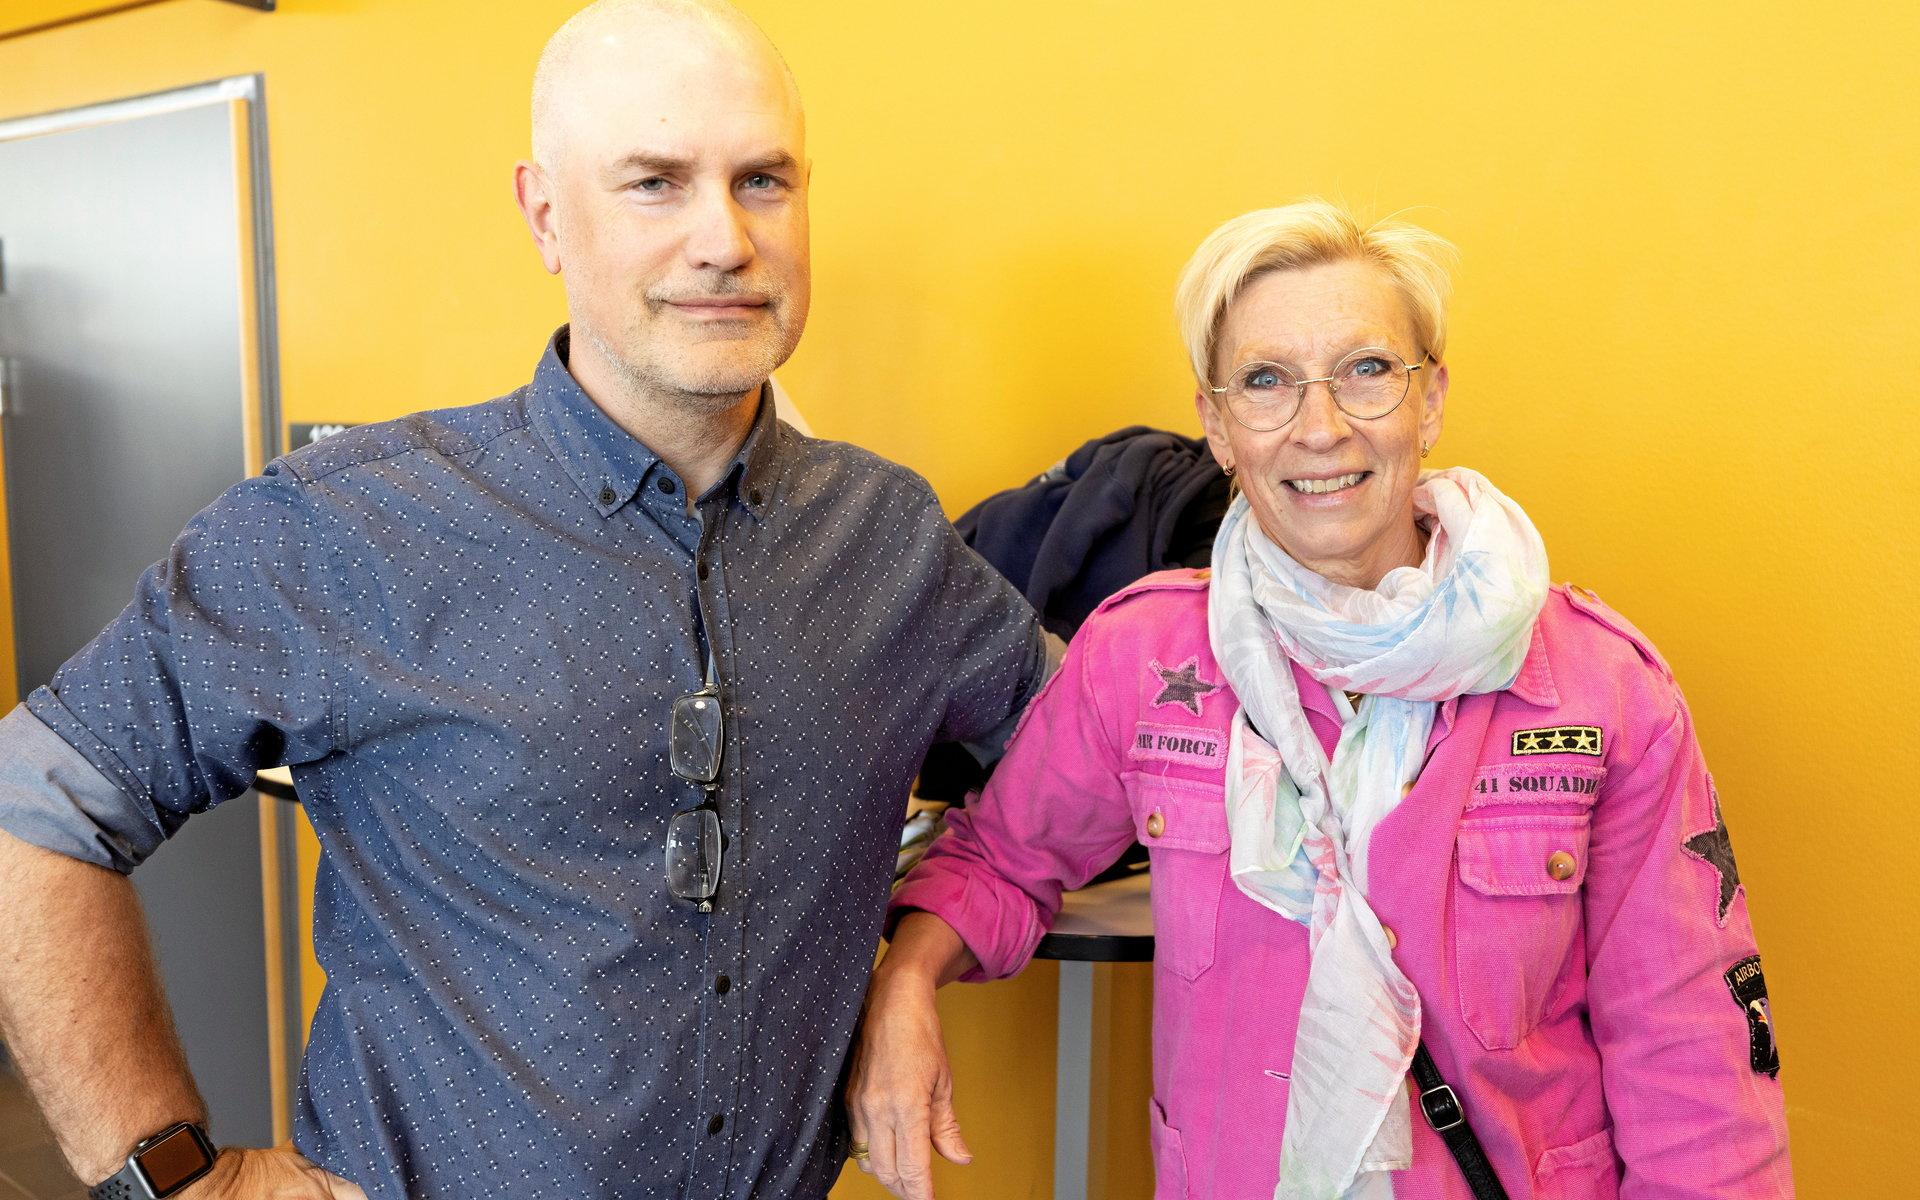 Johan och Anette Berander. Han är läkare och egenföretagare. Hon jobbar på Falkenberg Energi. ”Det här är ett av Sveriges bästa näringslivsdagar. Andra kommuner är avundsjuka på oss”, menar Anette.